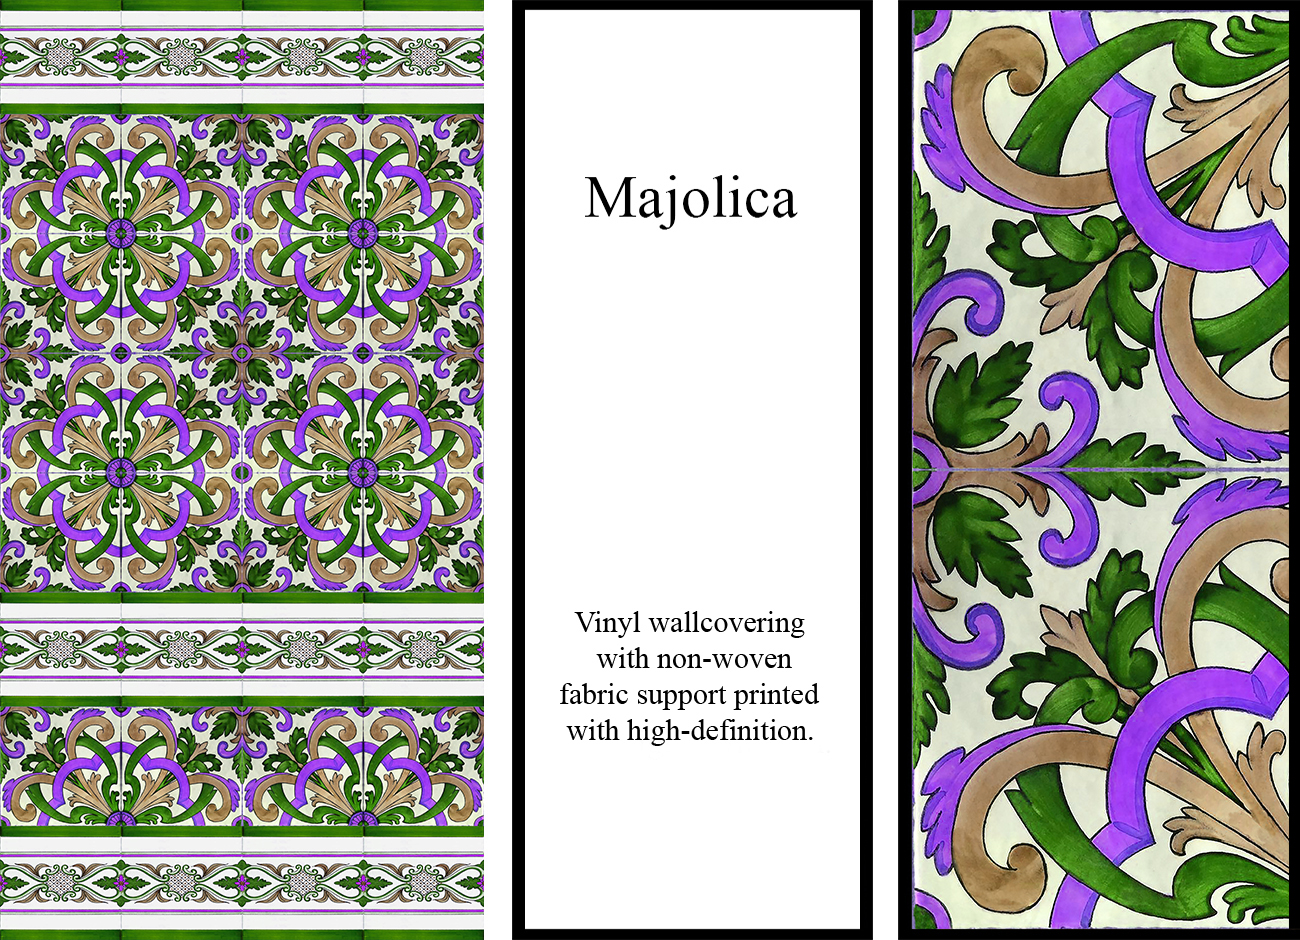 Carta da parati con maioliche a texture floreale dai colori viola, verde e ocra su fondo bianco